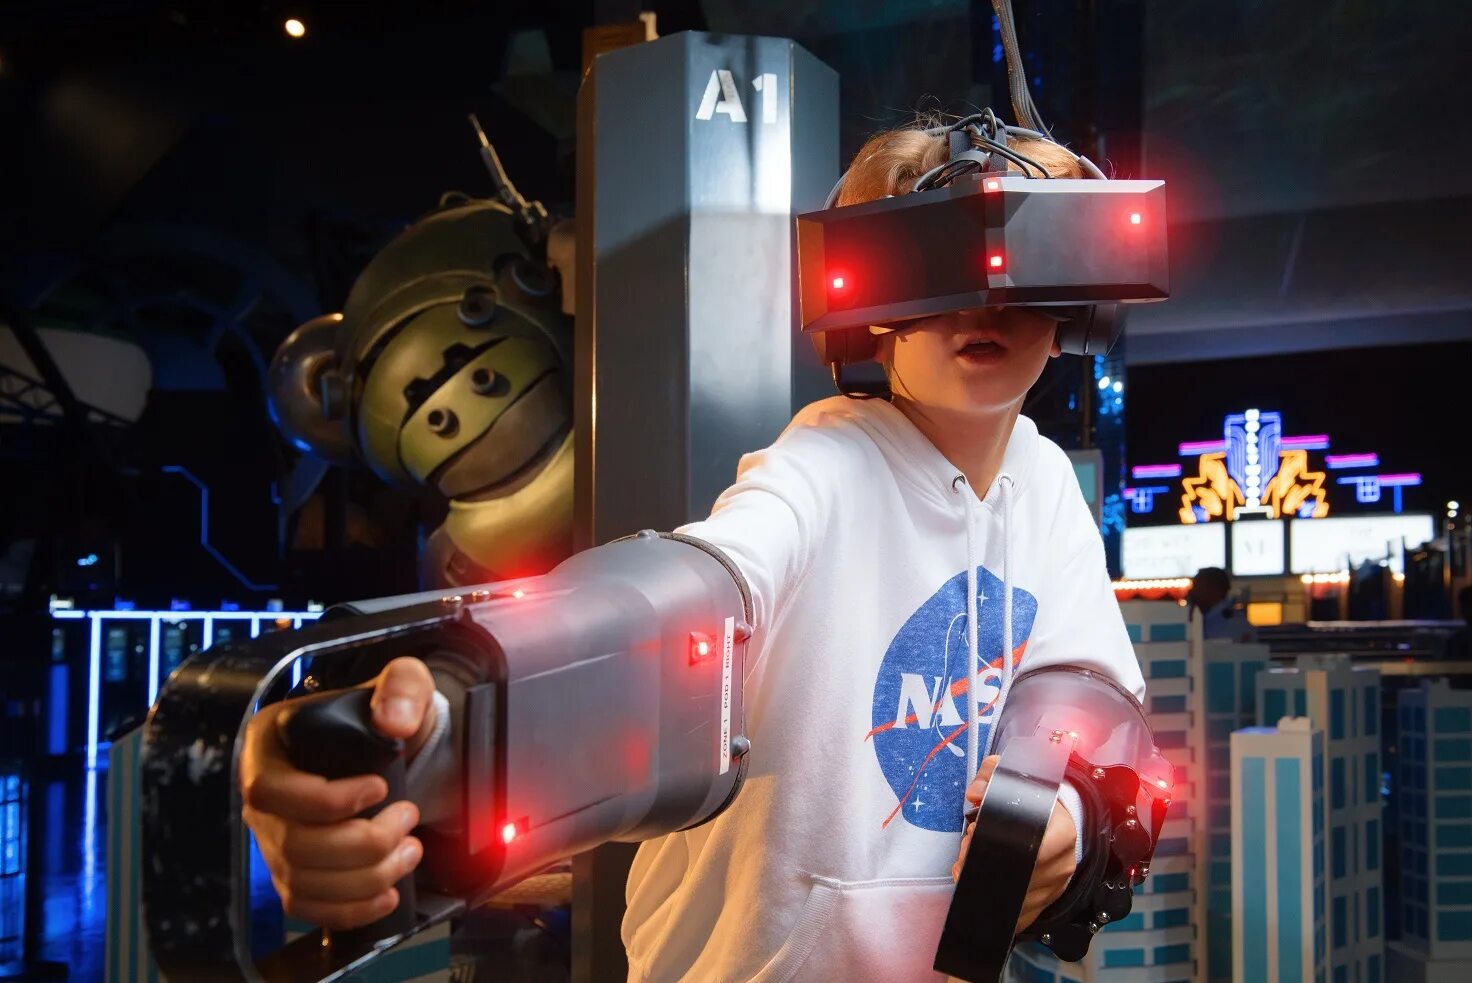 VR Park Dubai Mall. Theme Park VR. Аттракцион VR парк Дубай. Виртуальная реальность в Дубай молле.